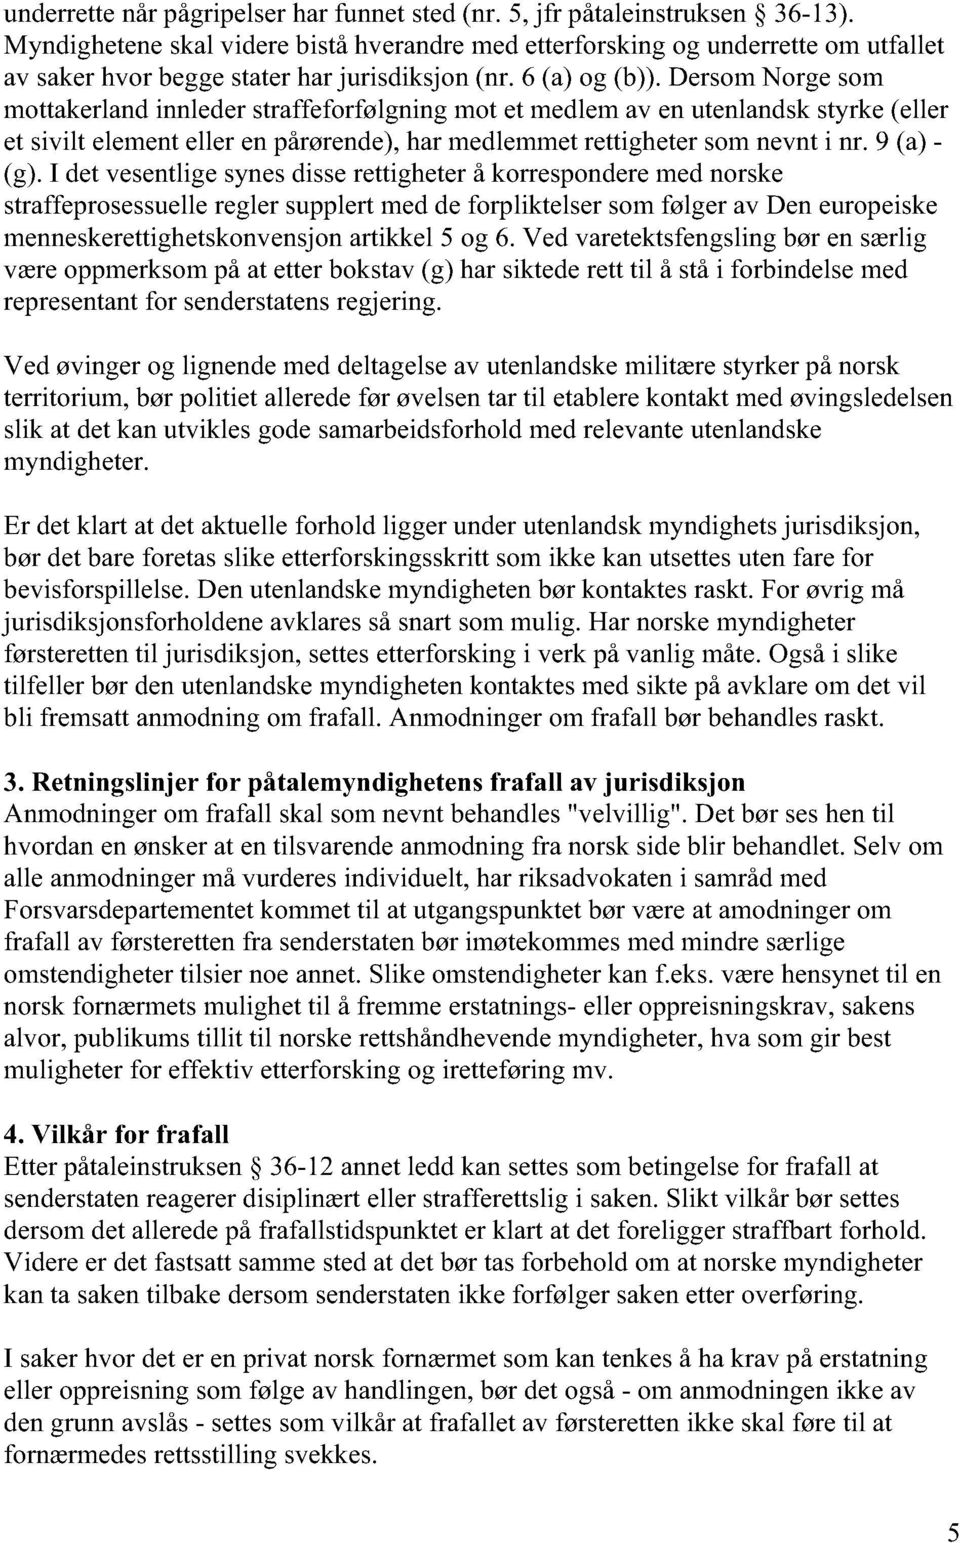 Dersom Norge som mottakerland innleder straffeforfølgning mot et medlem av en utenlandsk styrke (eller et sivilt element eller en pårørende), har medlemmet rettigheter som nevnt i nr. 9 (a) - (g).